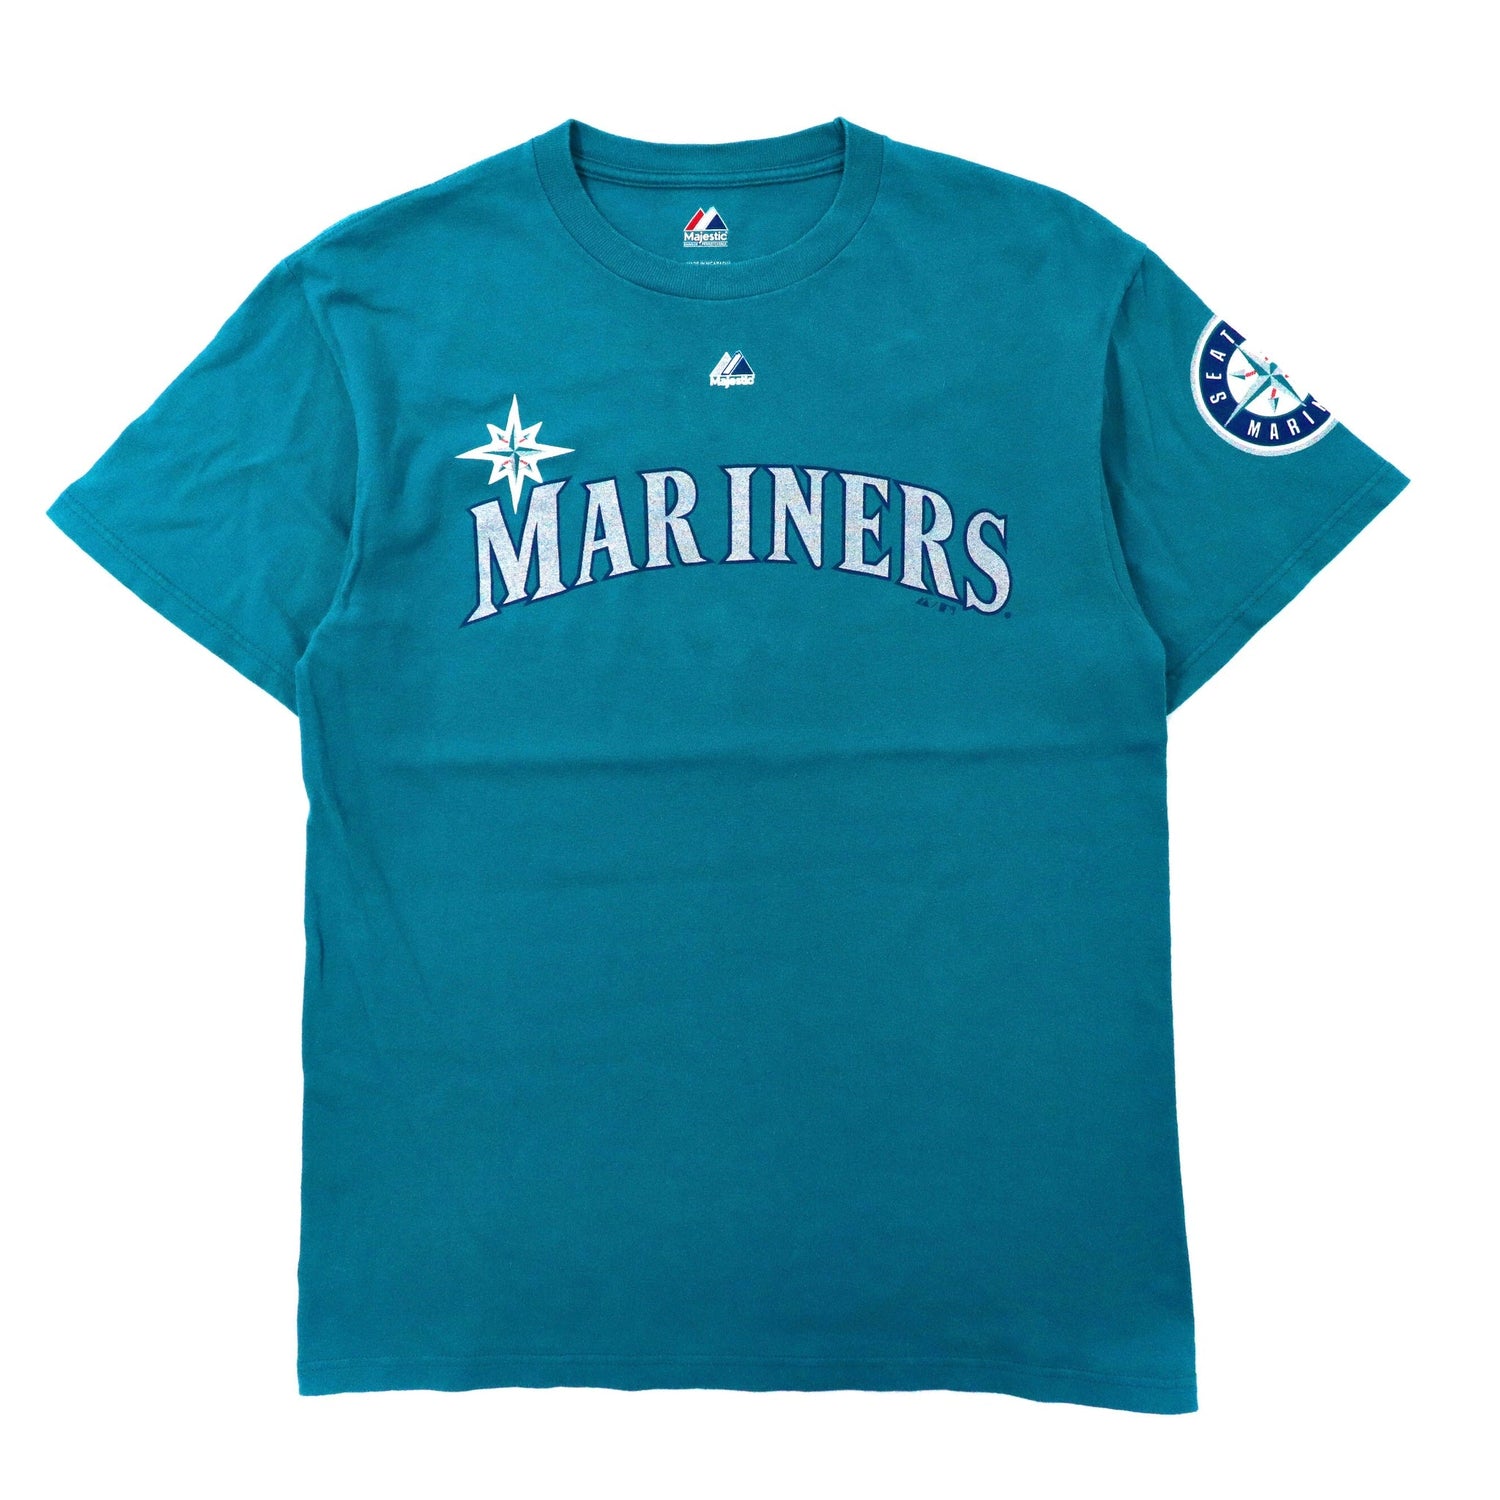 MLB Majestic マリナーズ ベースボールシャツ M - ウェア